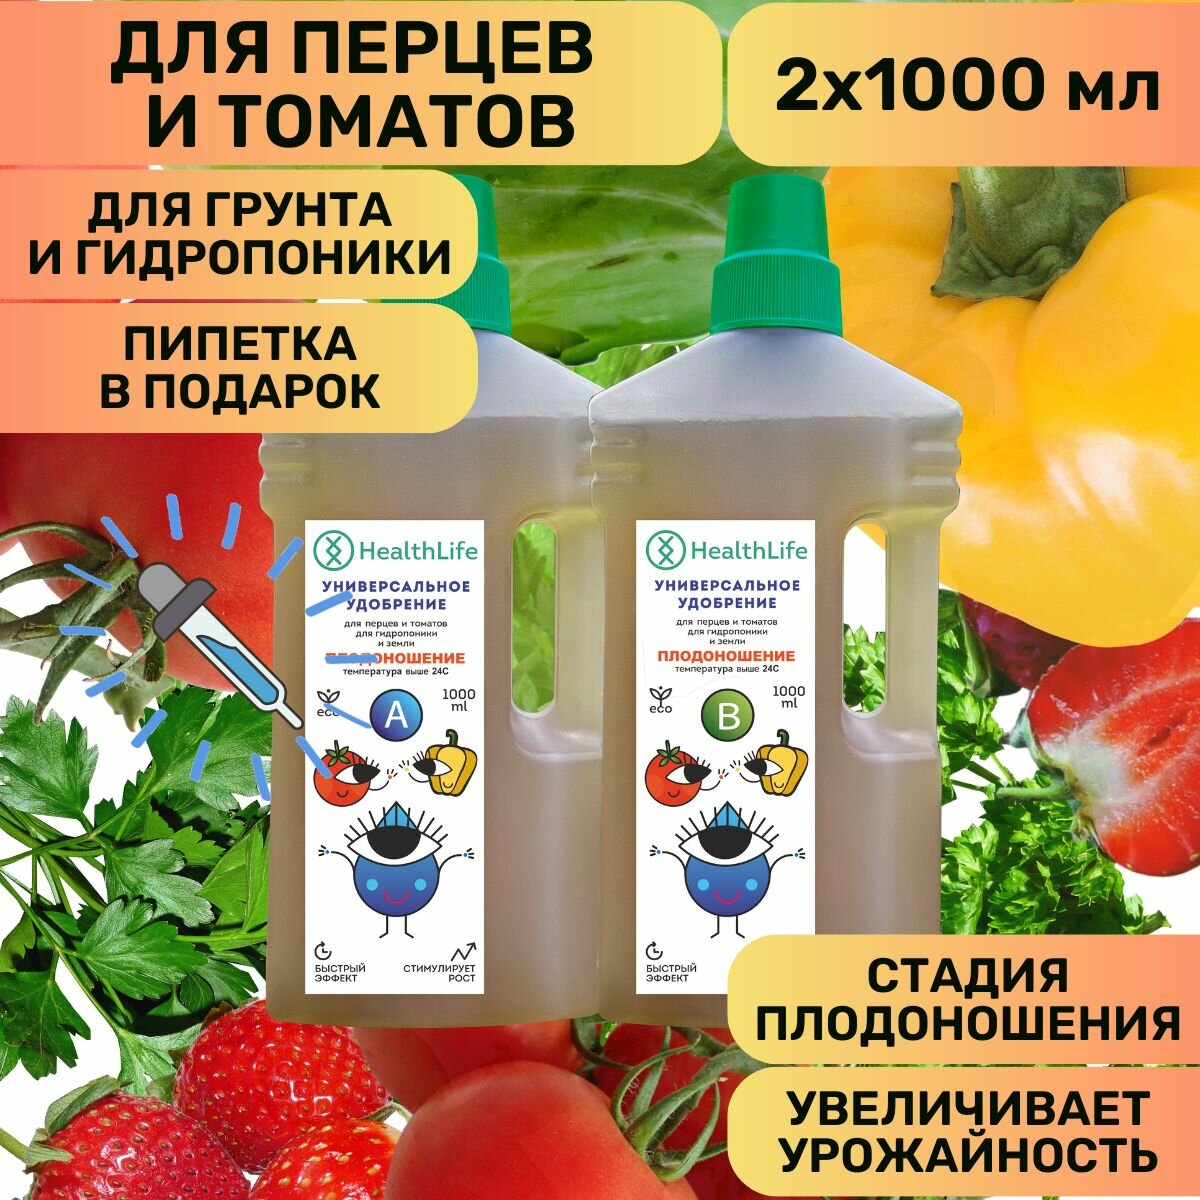 Комплекс HealthLife Удобрение для перцев и томатов А+В стадия Плодоношения (2 по 1000 мл) концентрат для гидропоники и грунта увеличивает урожайность